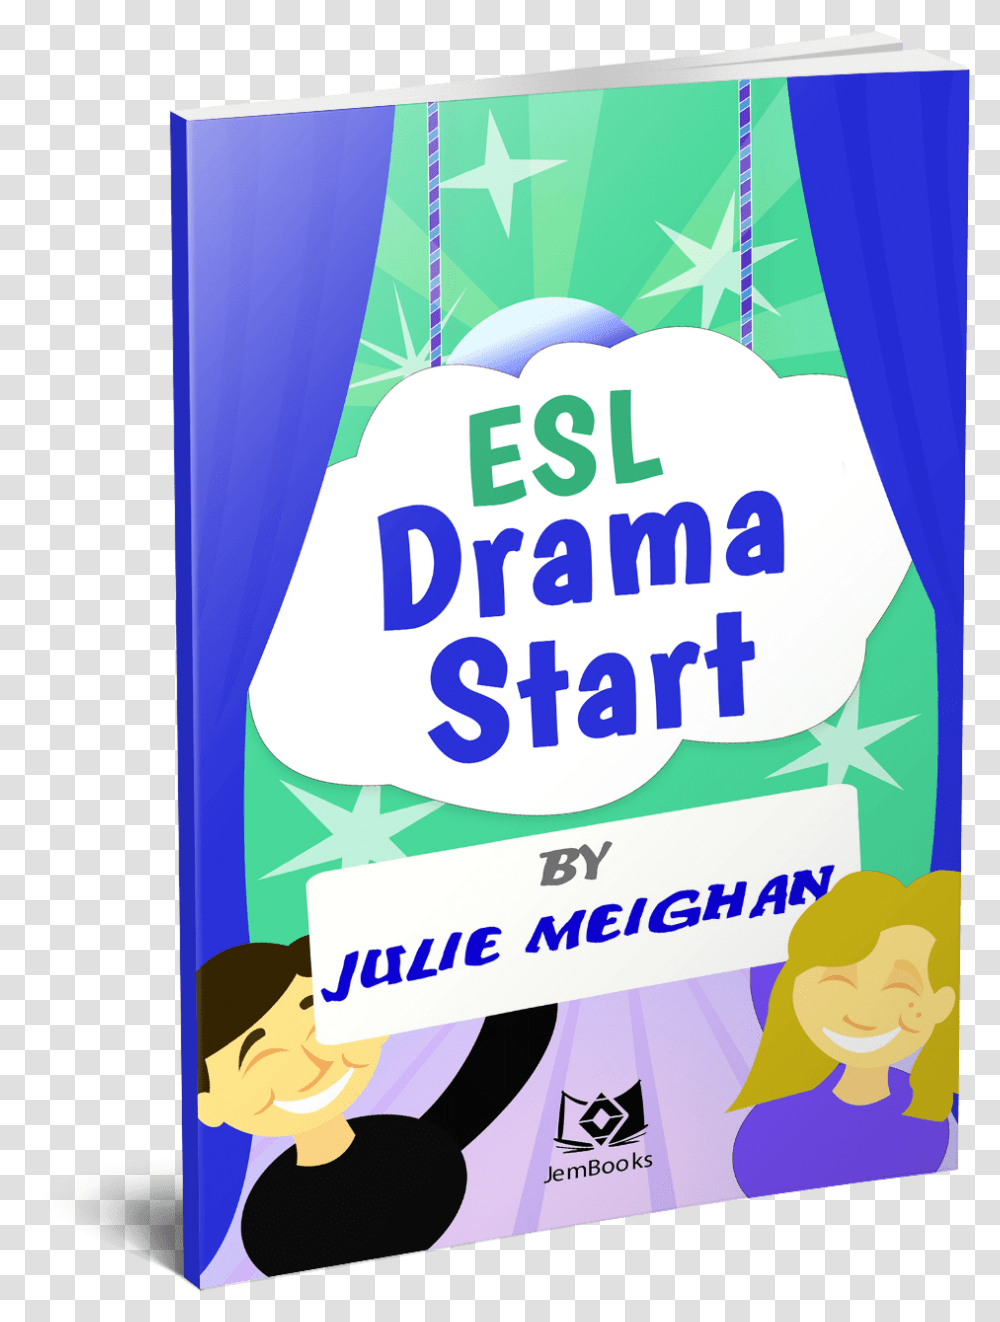 Esl Drama Start Julie Meighan, Poster, Advertisement, Flyer, Paper Transparent Png